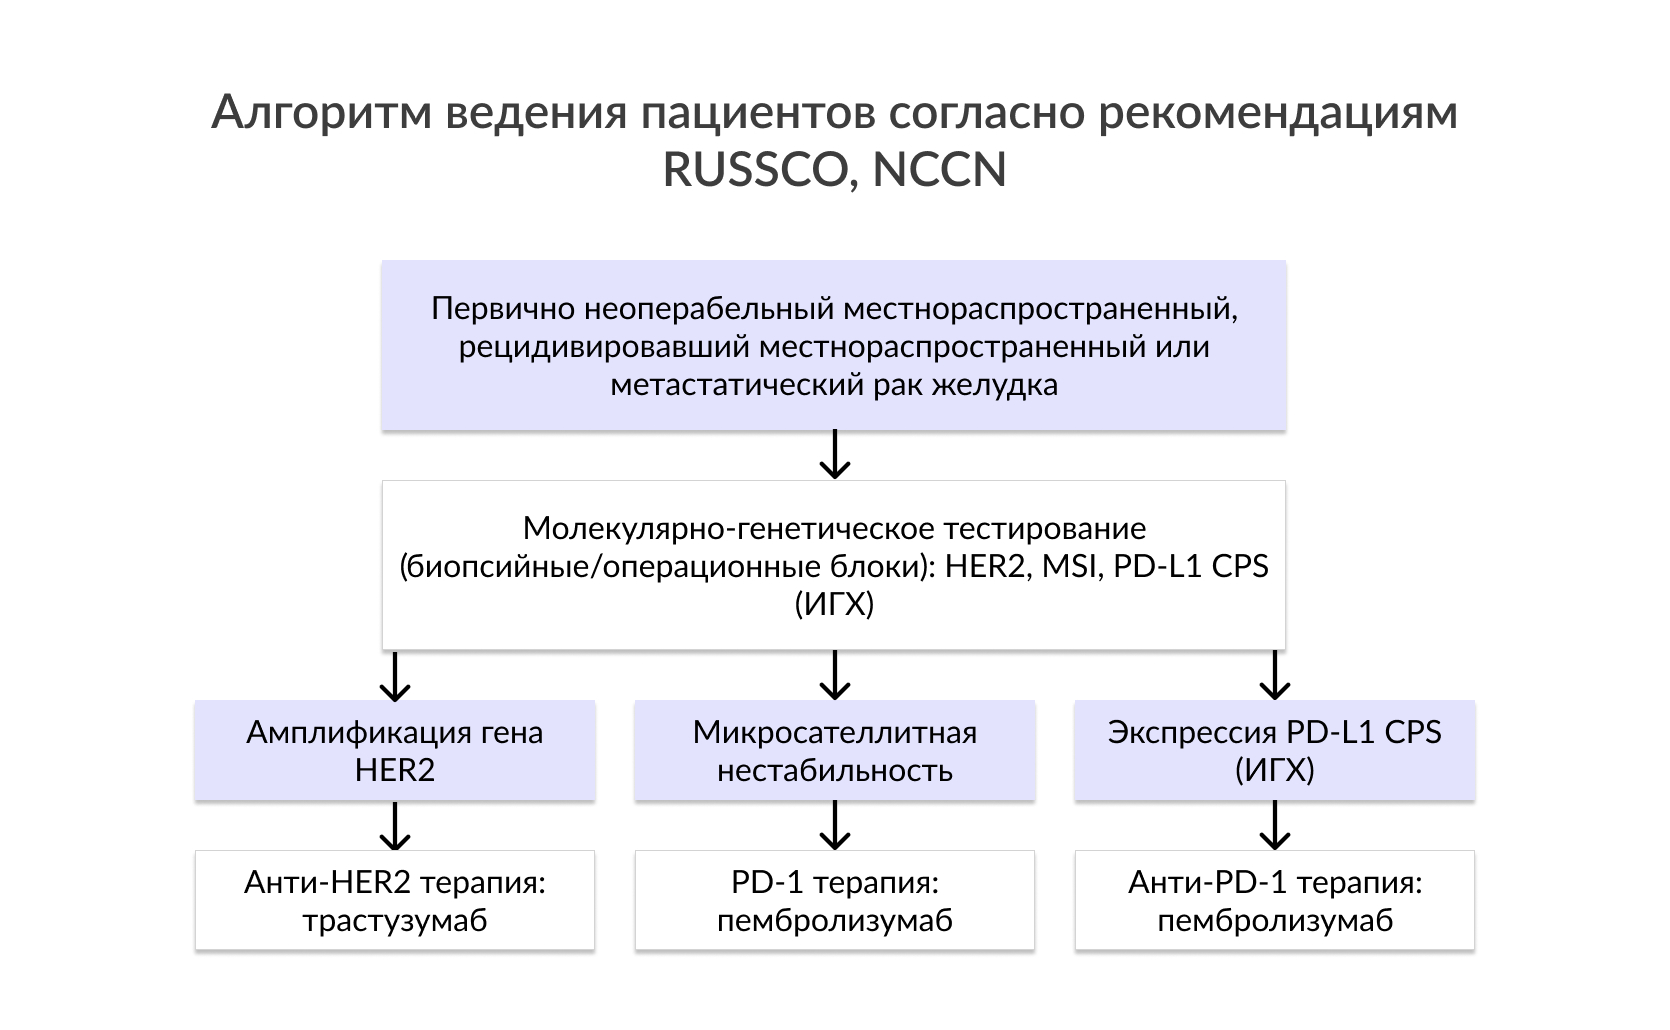 Алгоритм ведения пациентов согласно рекомендациям RUSSCO, NCCN